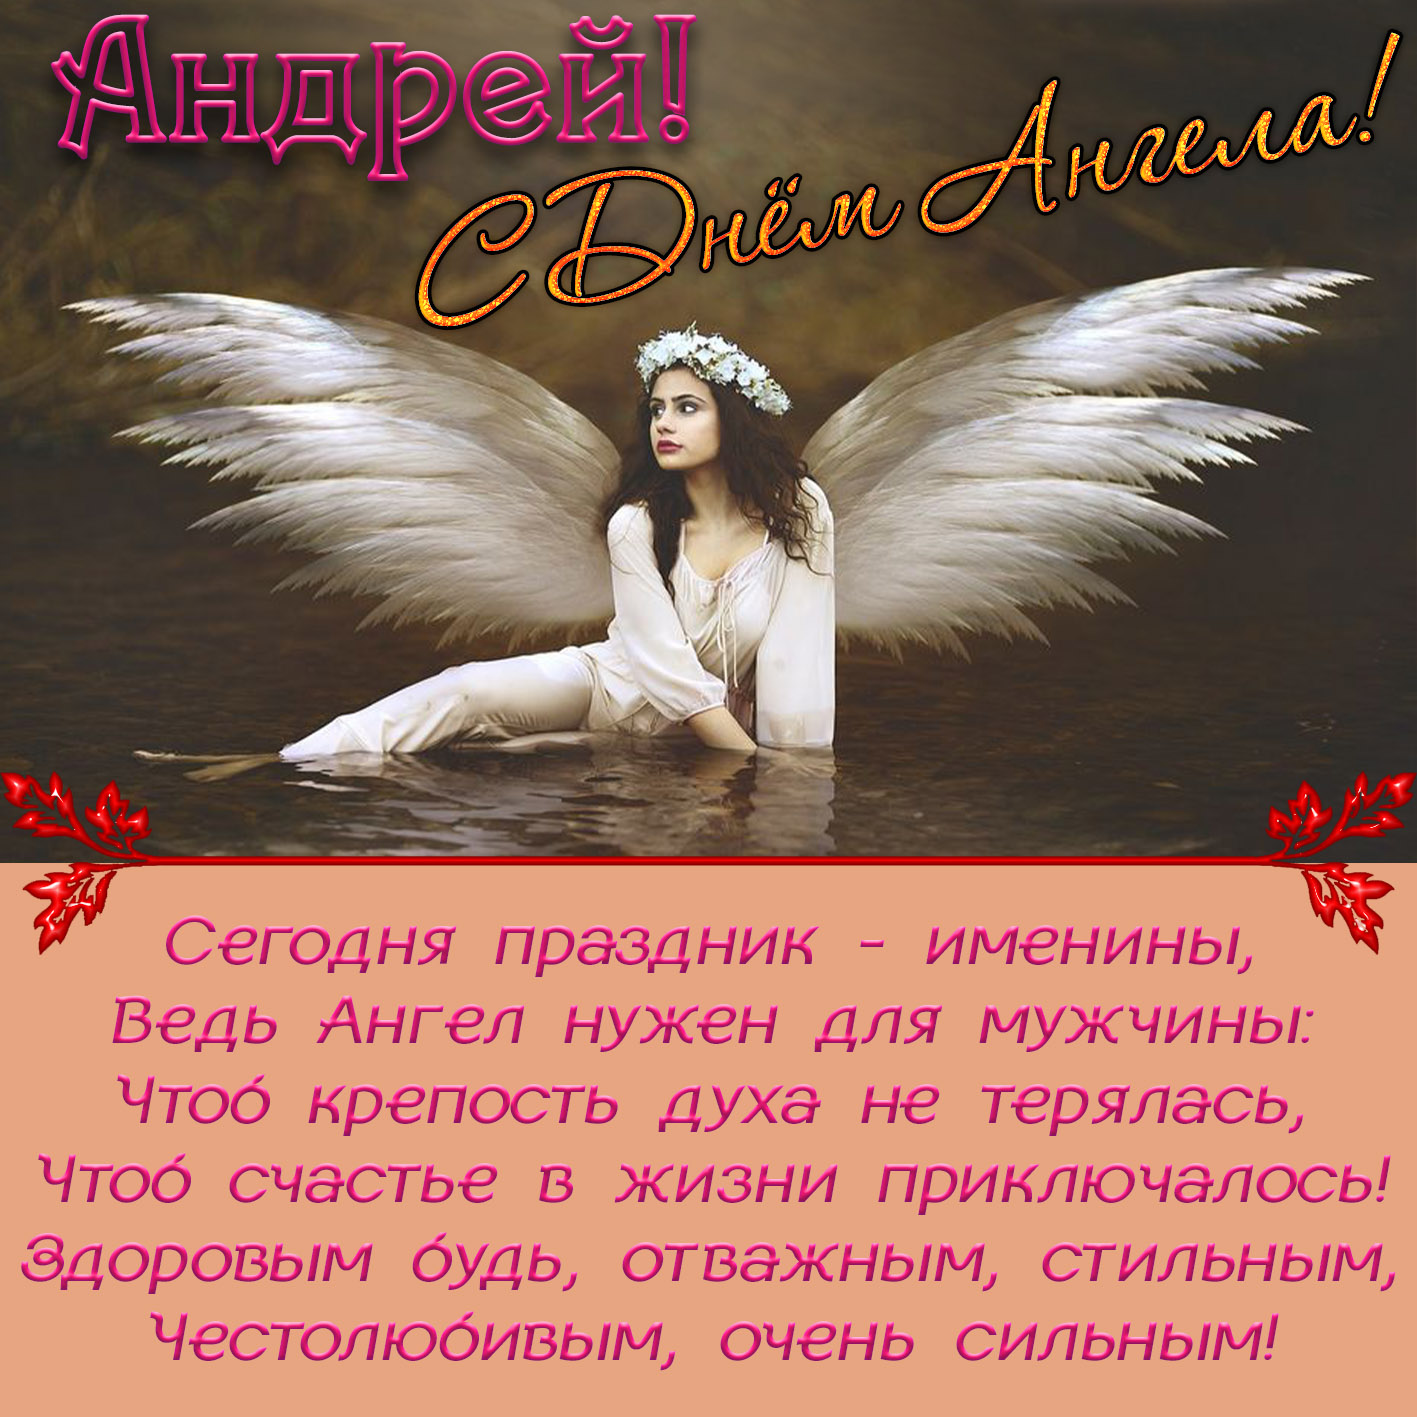 Именины - день ангела. поздравления с днем ангела :: syl.ru